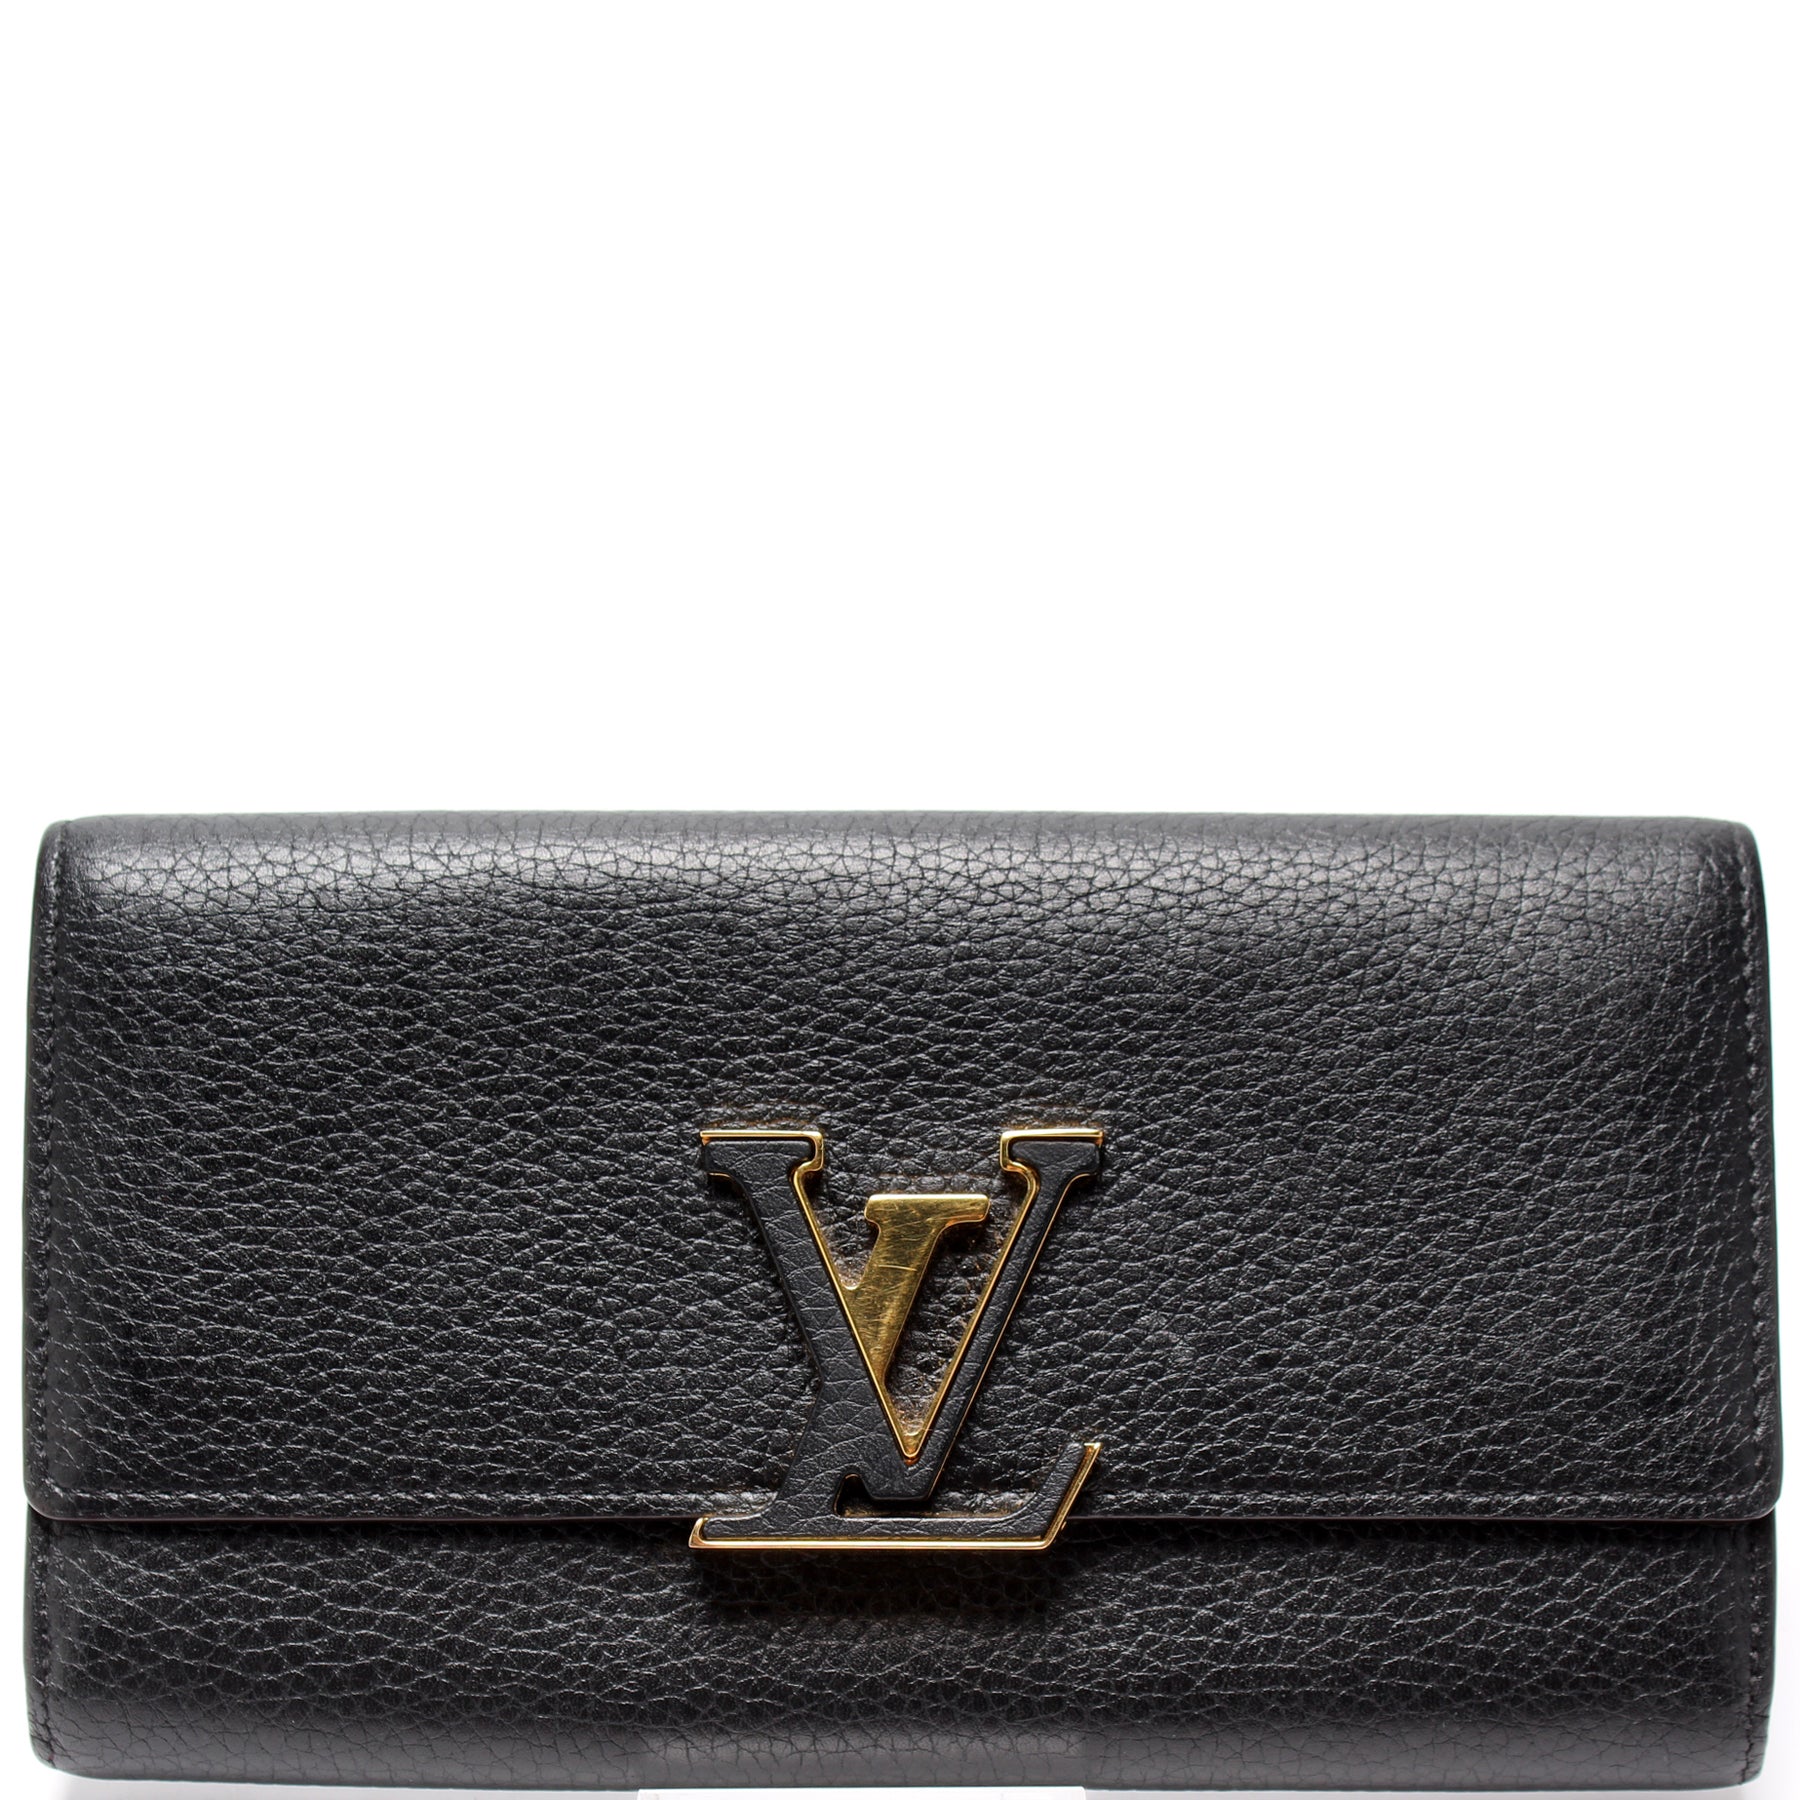 Authentic Louis Vuitton Black / Pink CAPUCINES Long Wallet